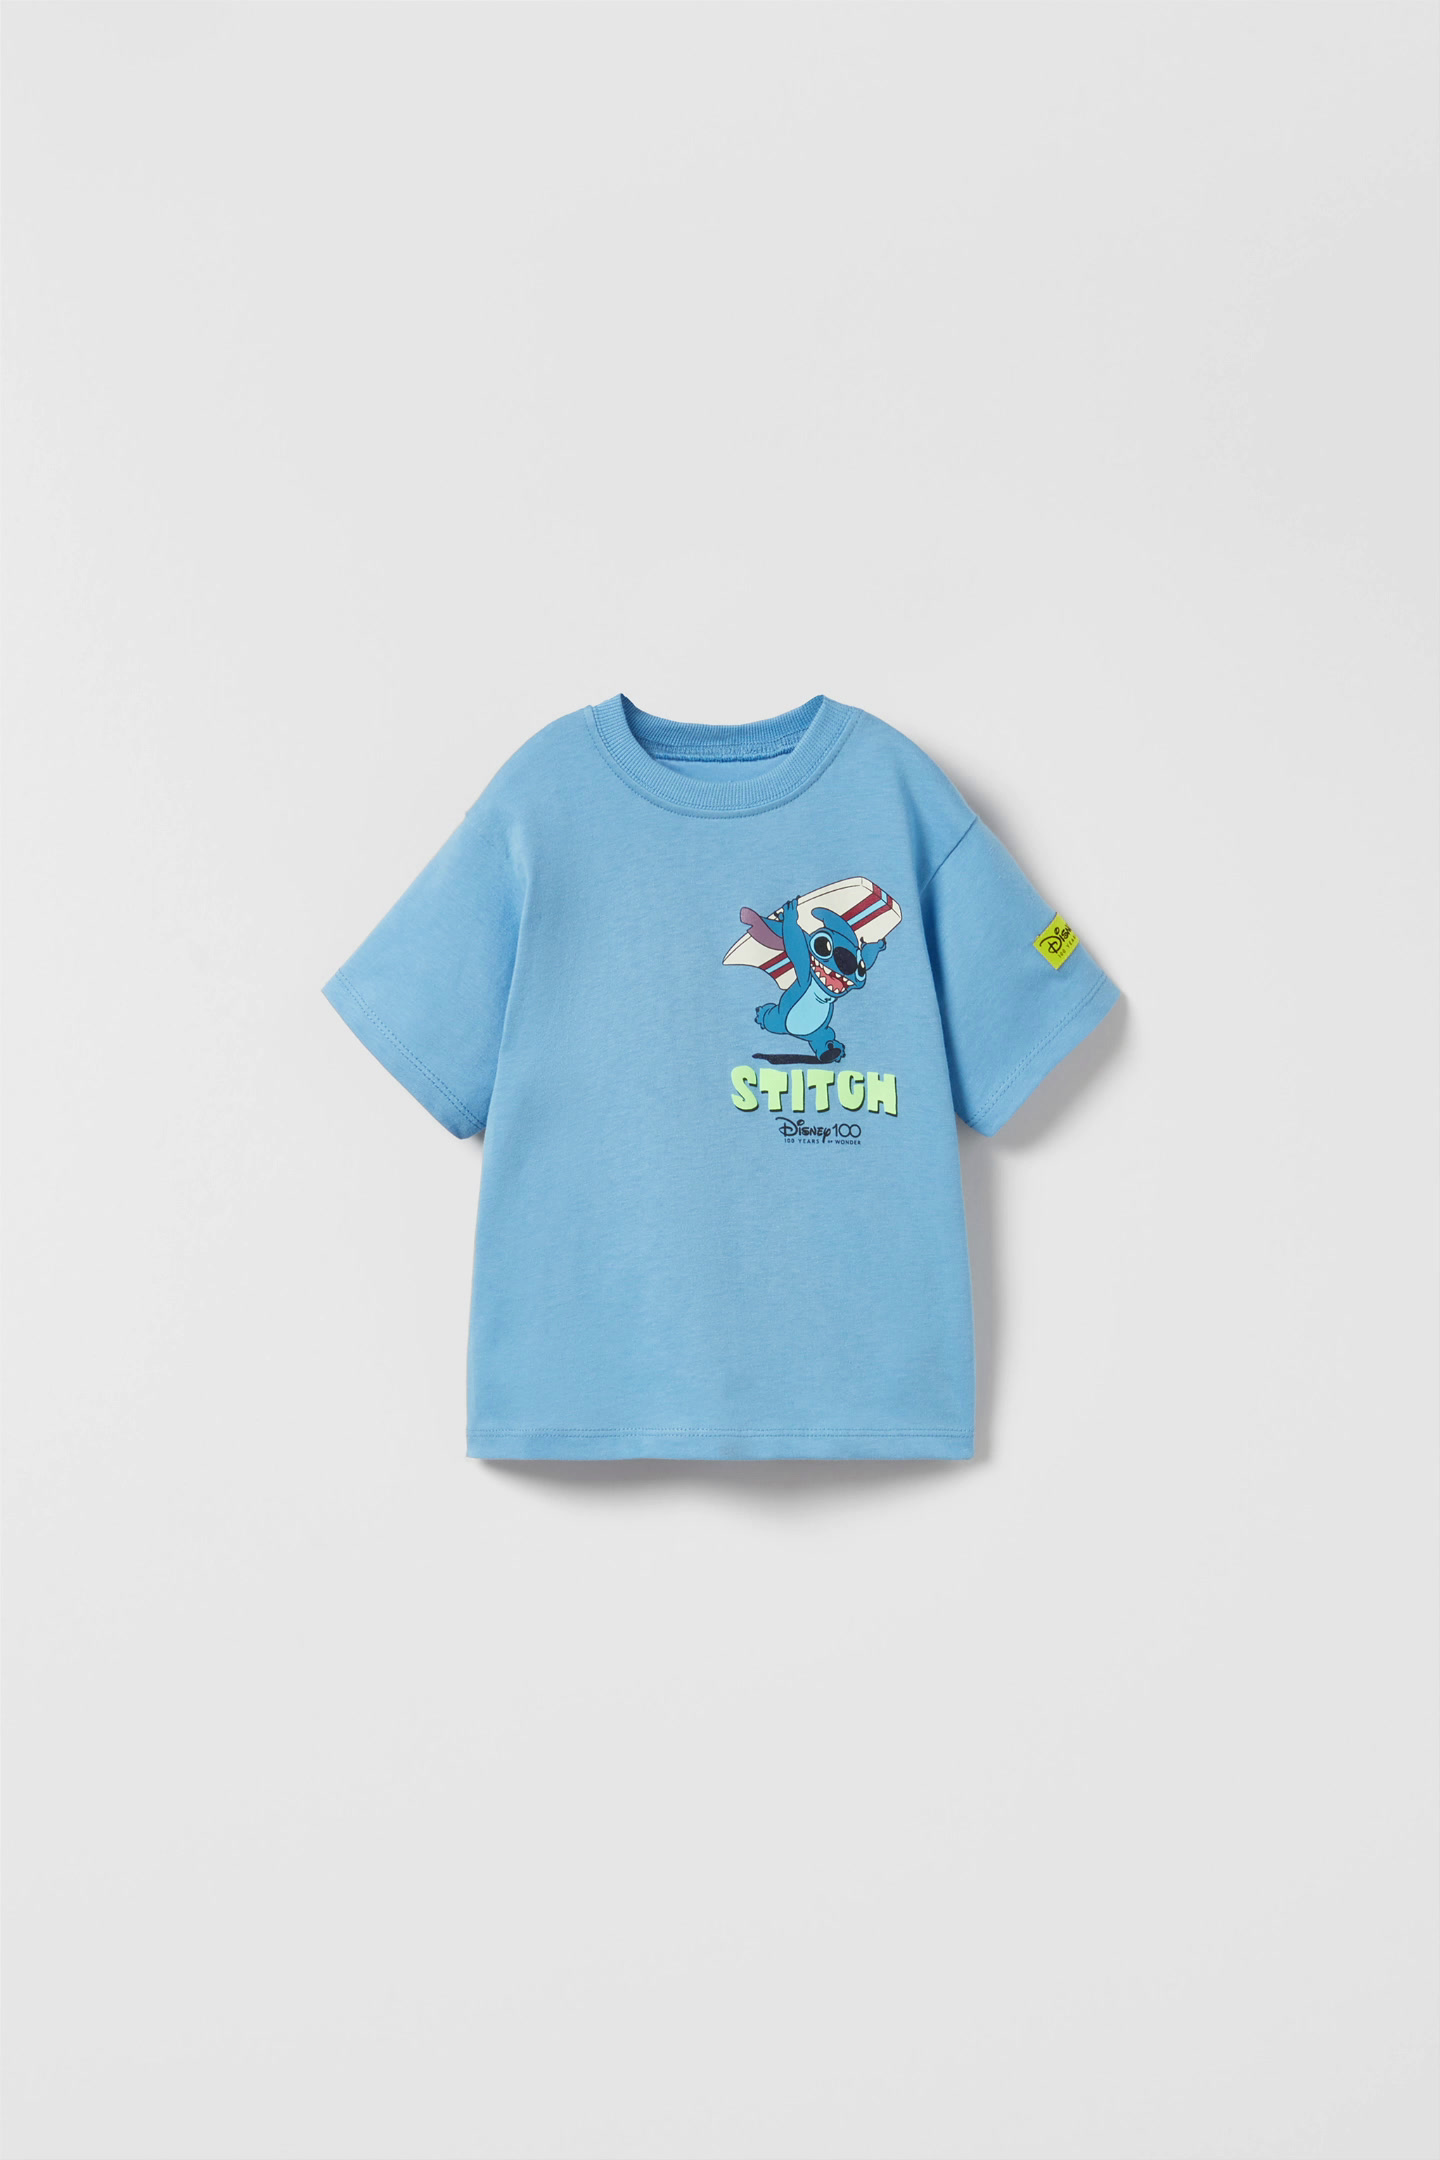 Zara Lilo & Stitch © Disney T-Shirt - Big Apple Buddy